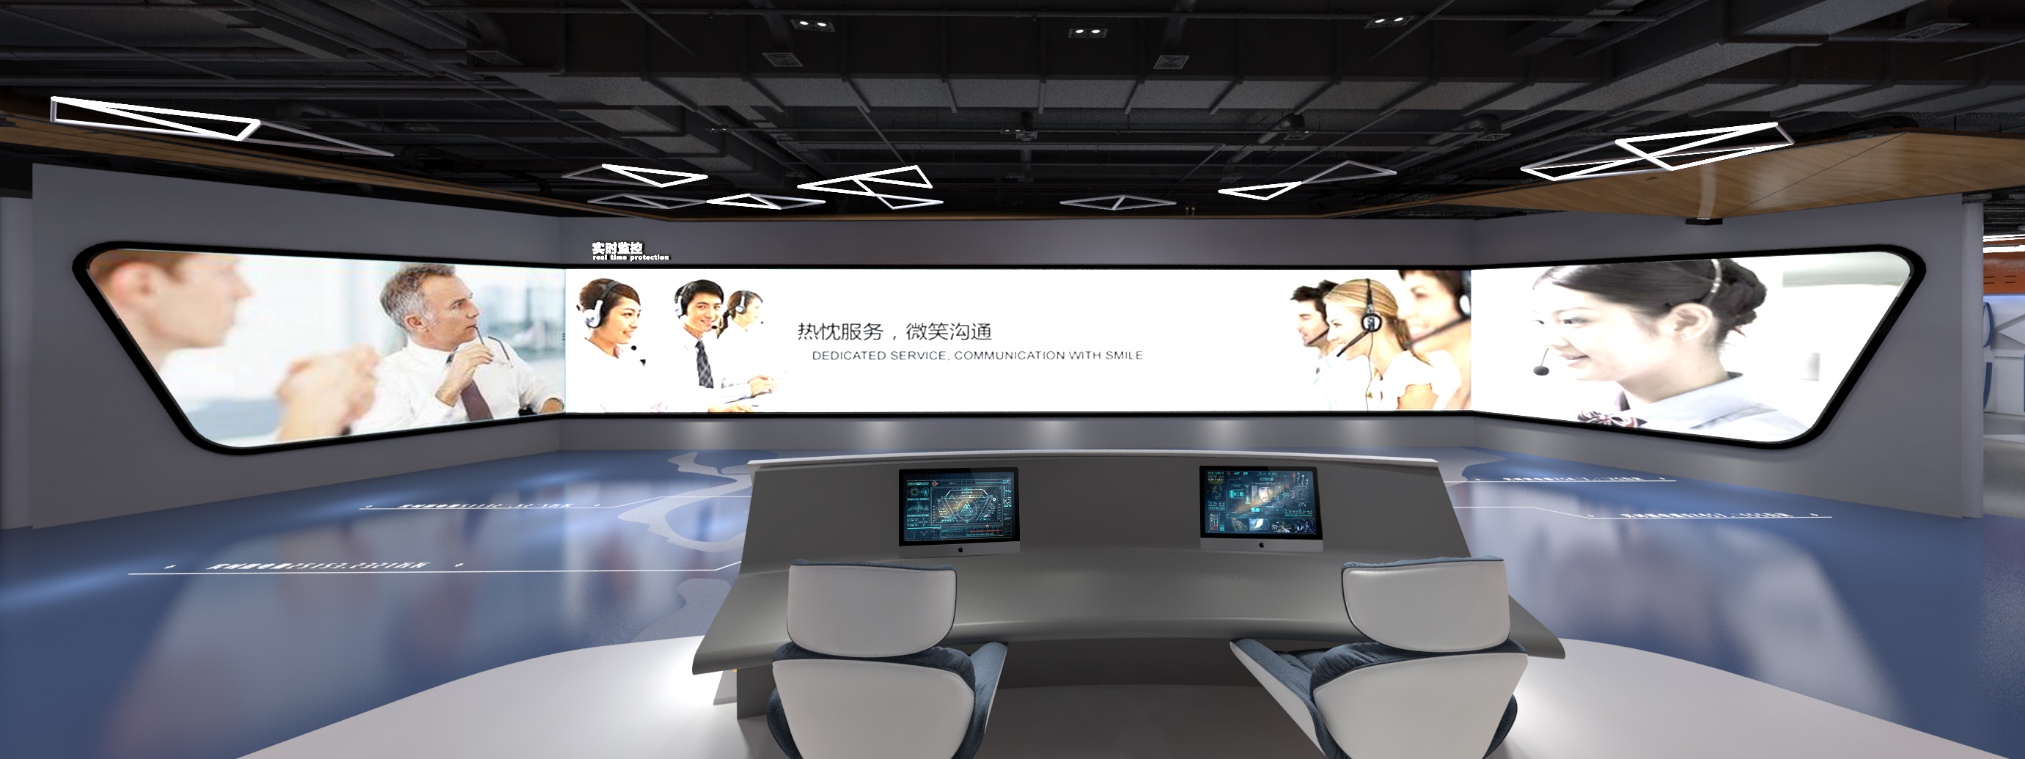 [广州]供电局客服中心742㎡创意展厅施工图-联盟设计库 (1)